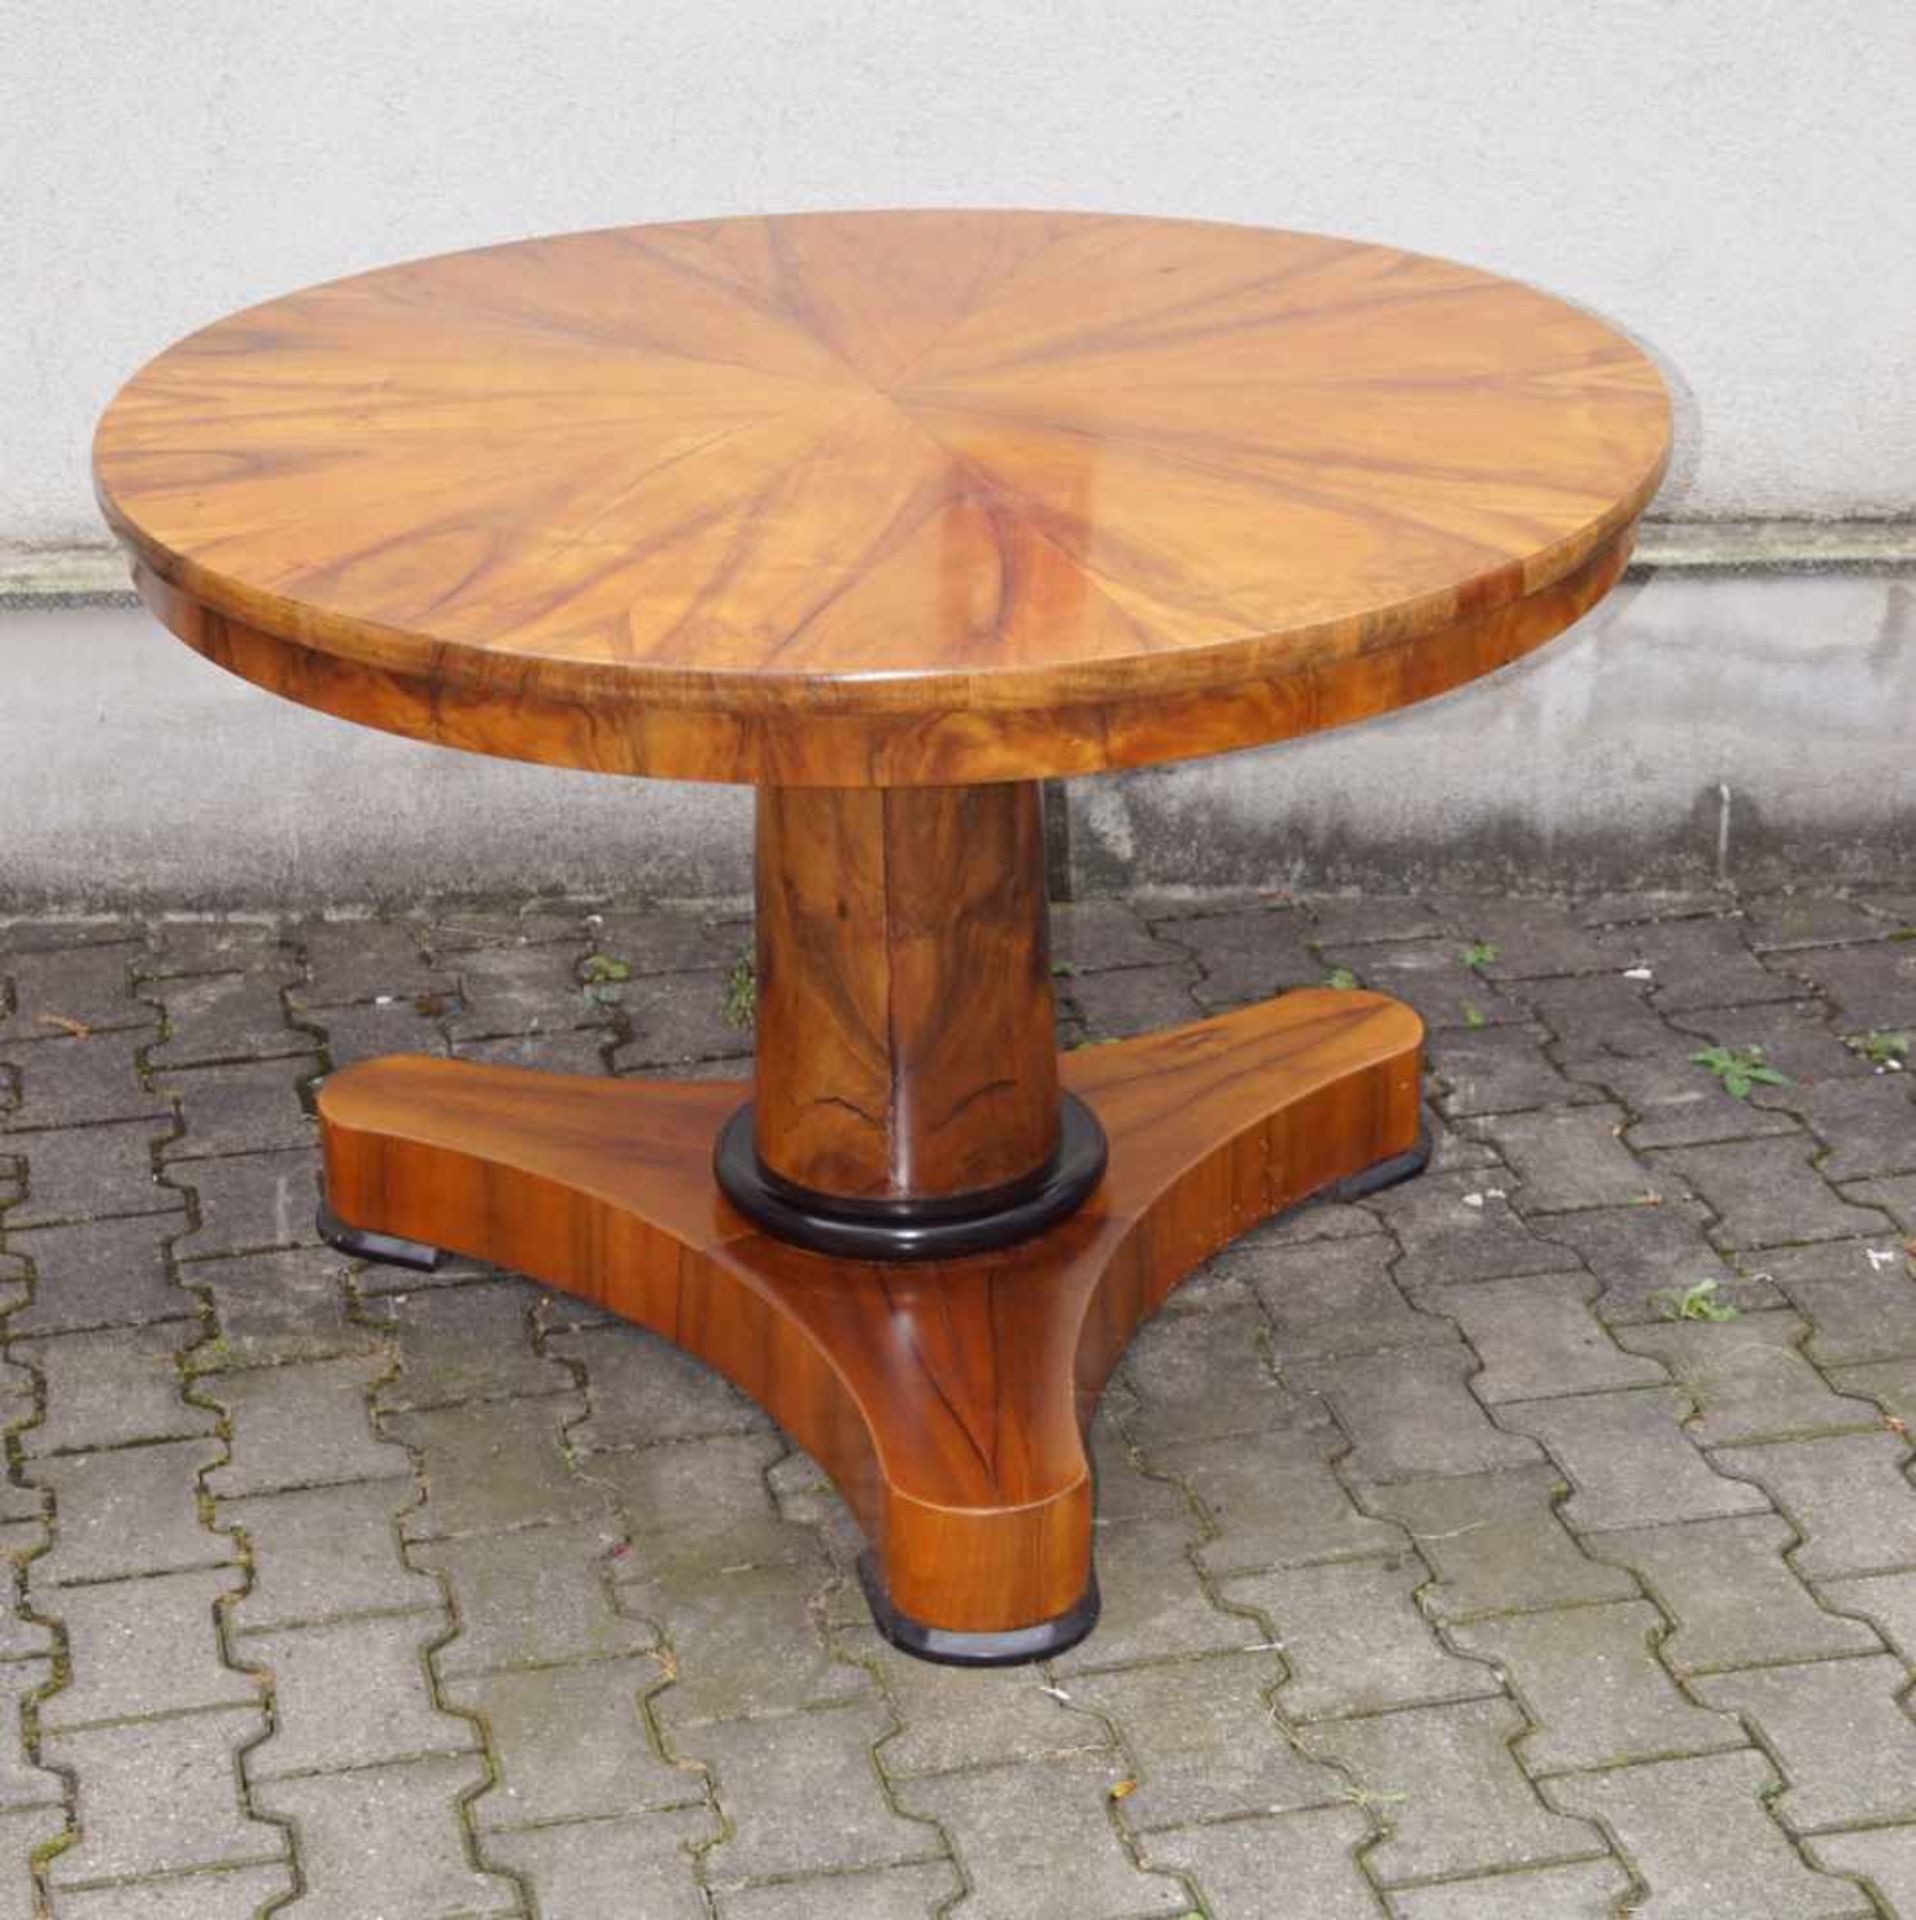 Runder Tisch des Biedermeier, süddeutsch um 1835 Nussbaum auf Weichholz furniert, der Fuß in Form